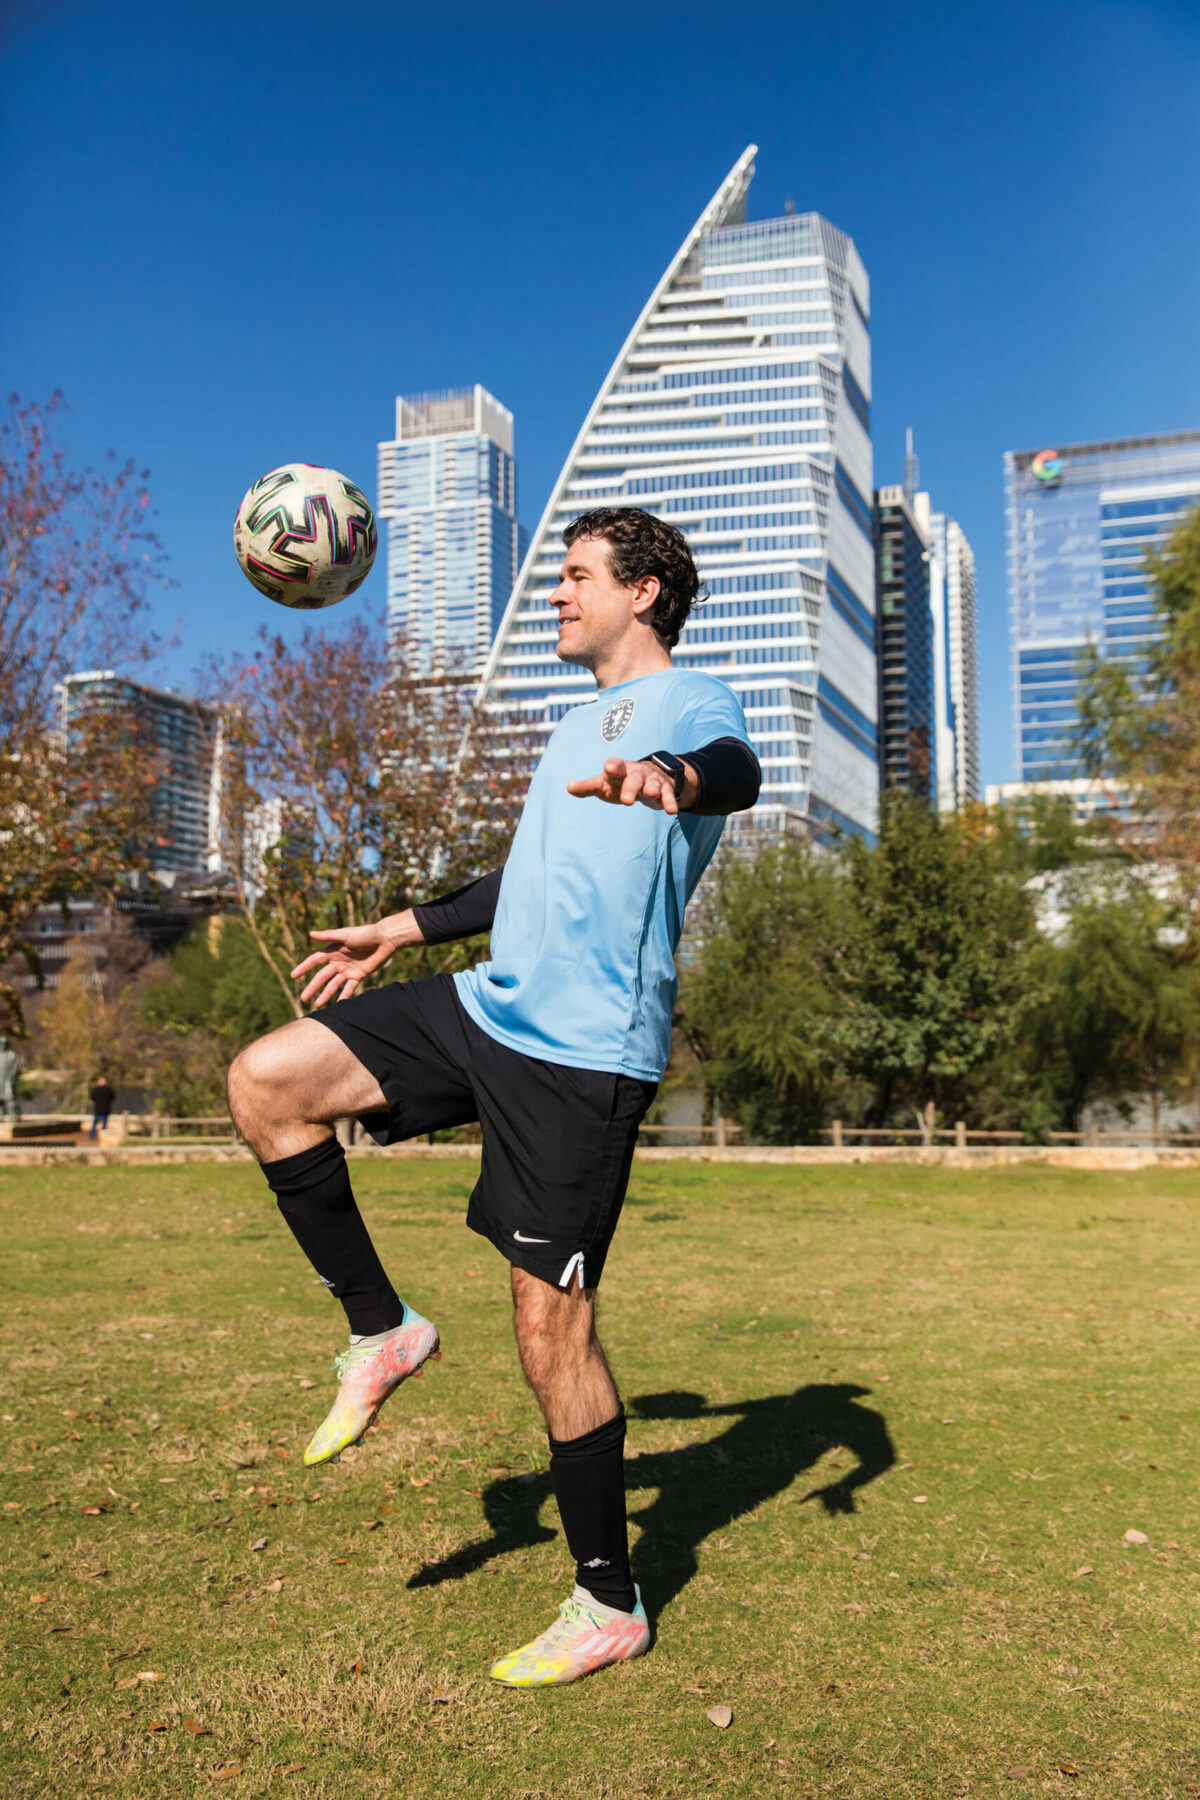 Fernando kicking a soccer ball.